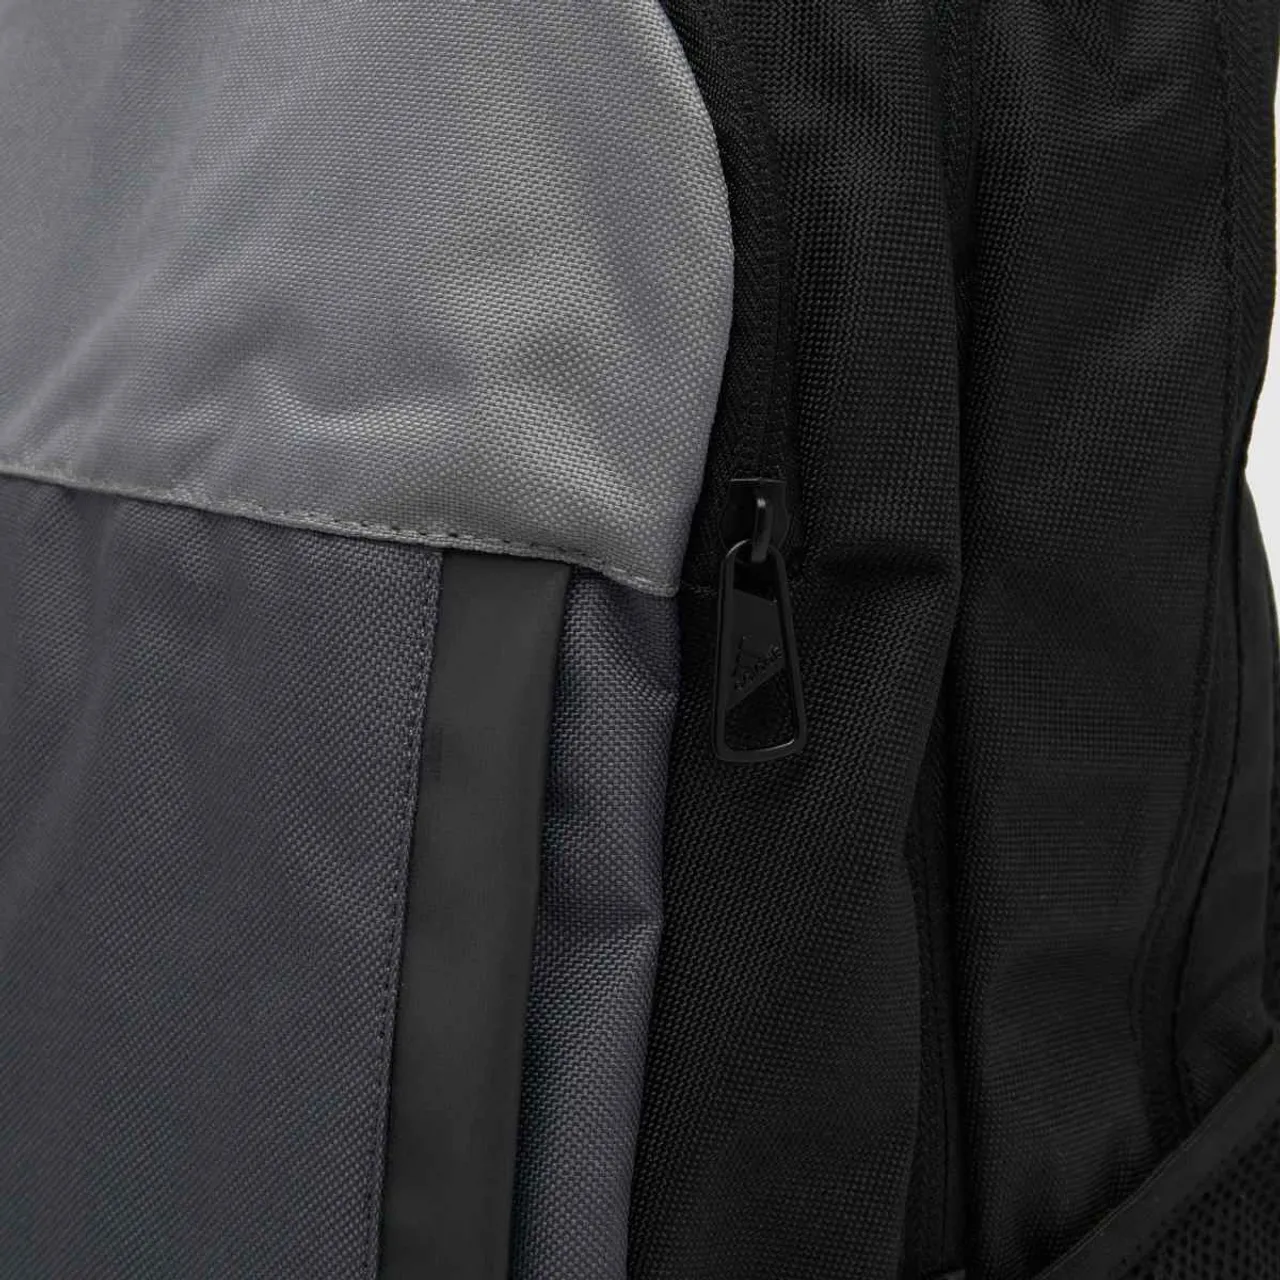 Adidas Black & Grey Motion Backpack, Size: One Size